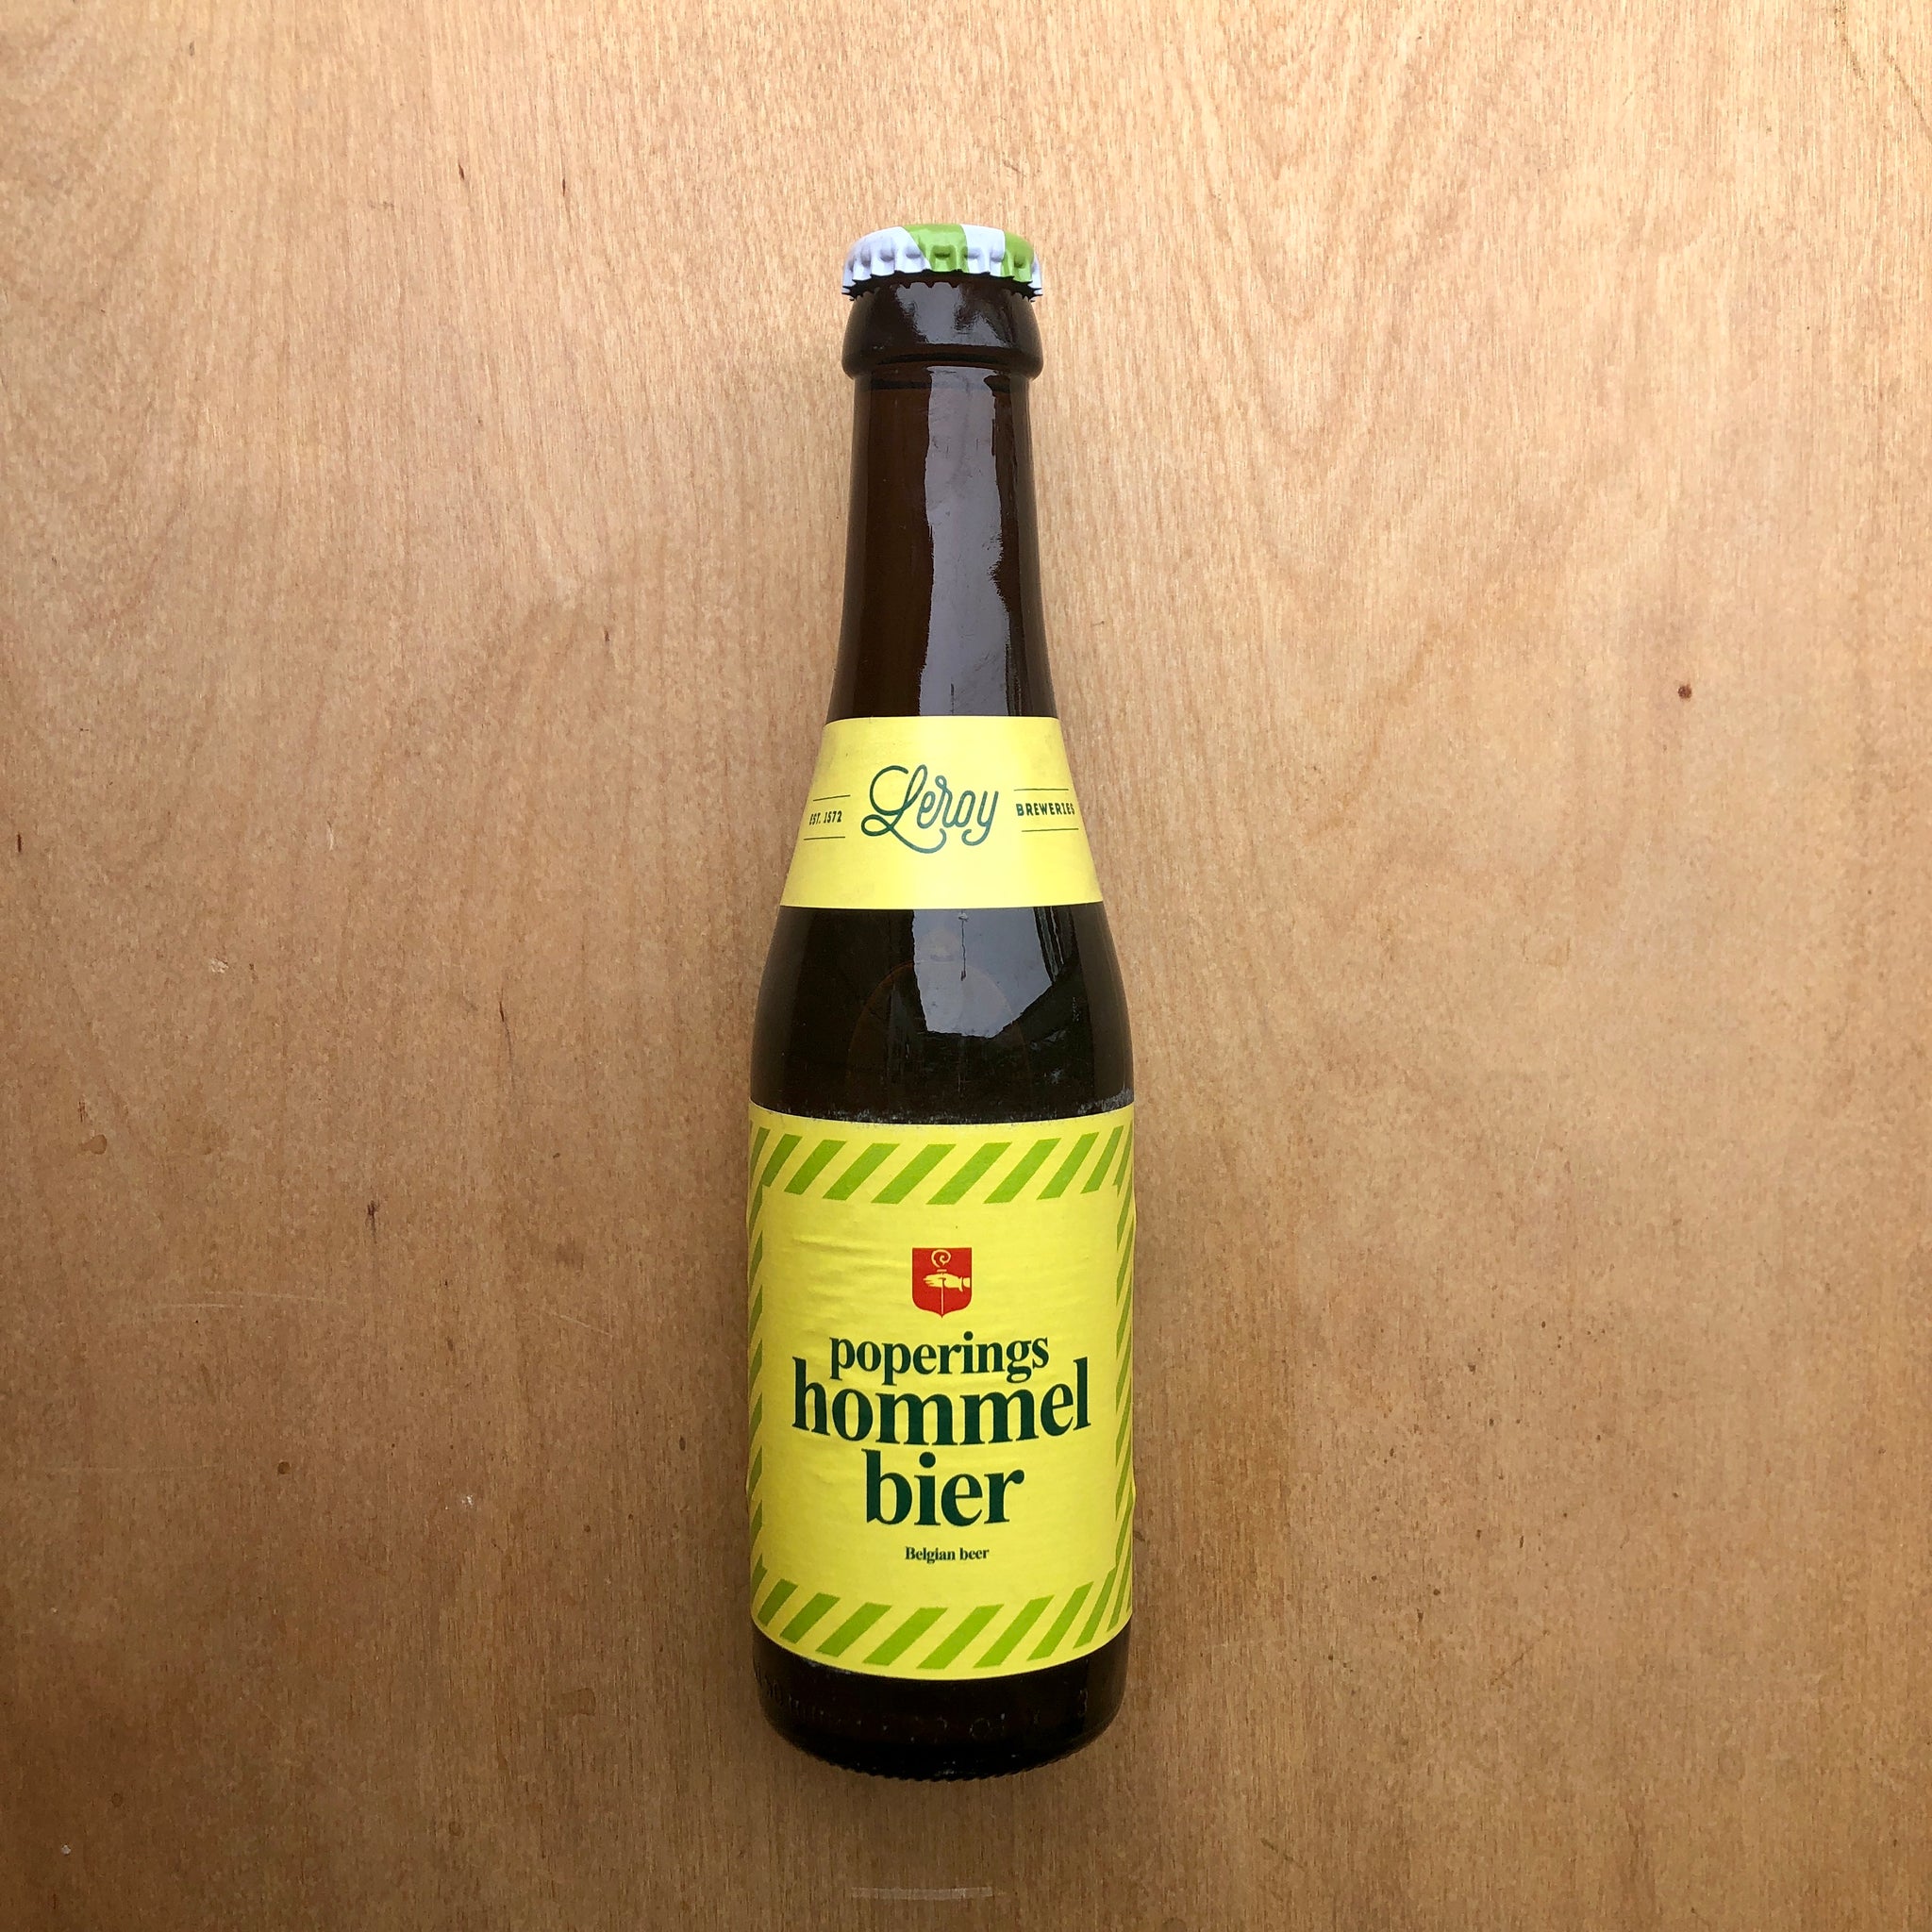 Leroy - Poperings Hommel Bier 7.5% (330ml)